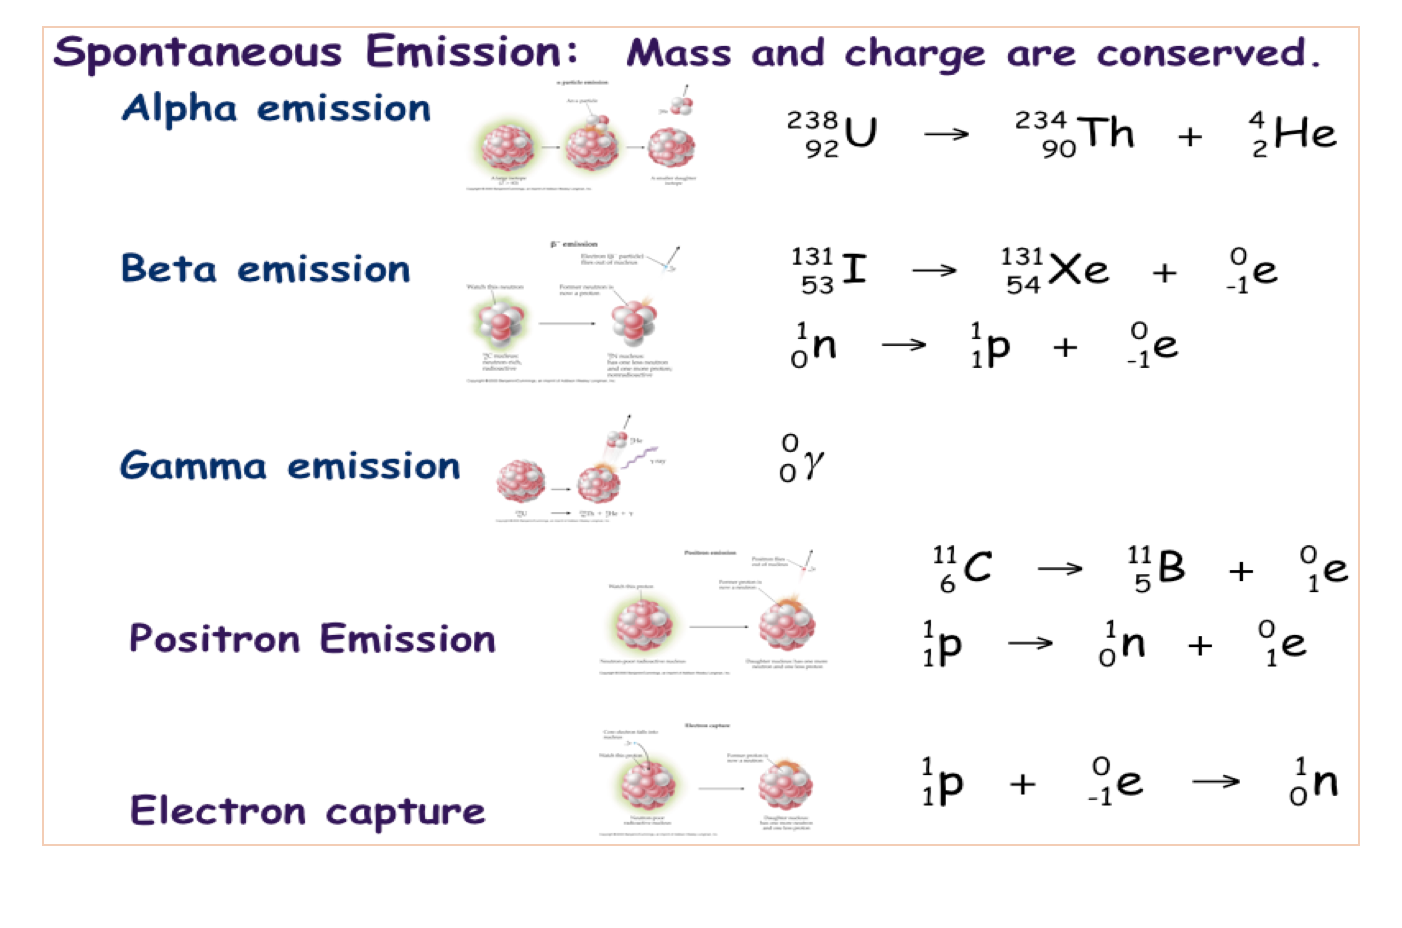 positron emission vs electron capture